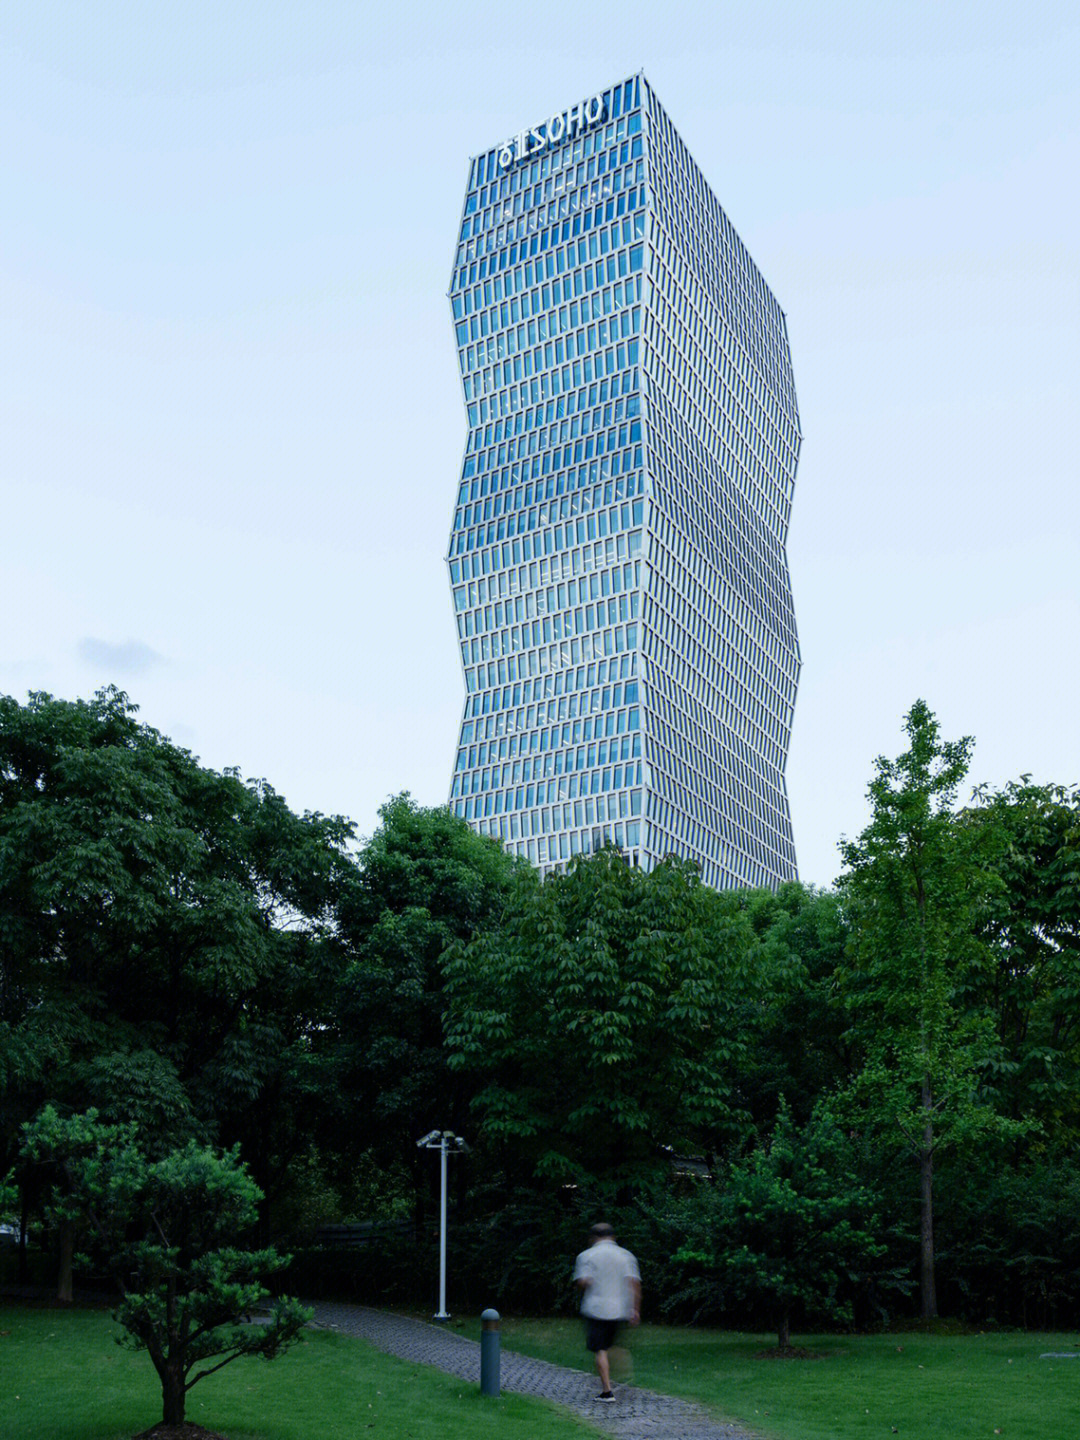 92上海古北soho 全球知名建筑设计事务所kpf设计01上海市长宁区红